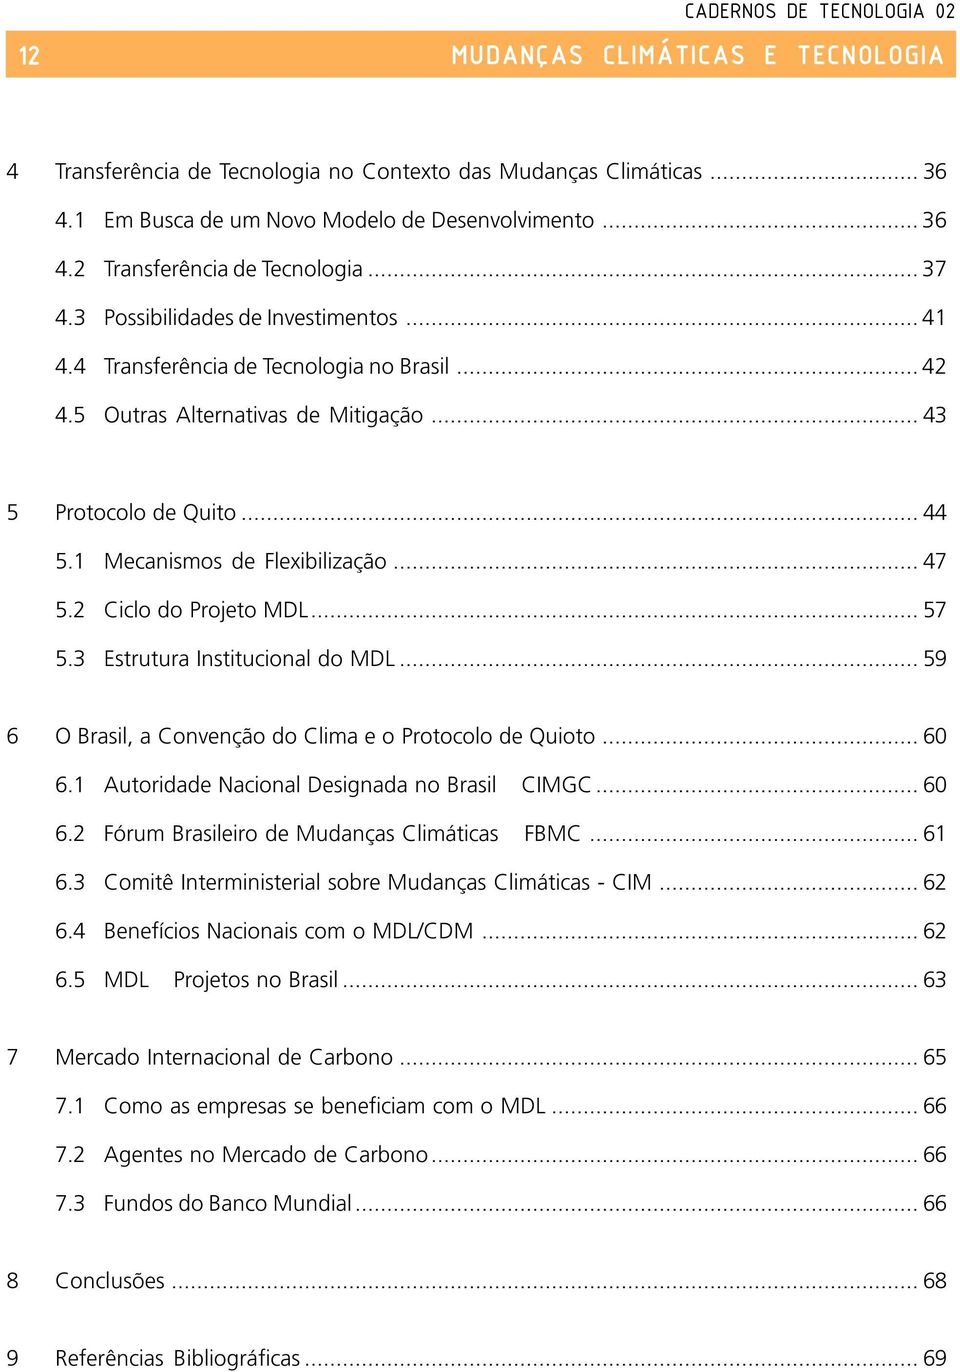 2 Ciclo do Projeto MDL... 57 5.3 Estrutura Institucional do MDL... 59 6 O Brasil, a Convenção do Clima e o Protocolo de Quioto... 60 6.1 Autoridade Nacional Designada no Brasil CIMGC... 60 6.2 Fórum Brasileiro de Mudanças Climáticas FBMC.